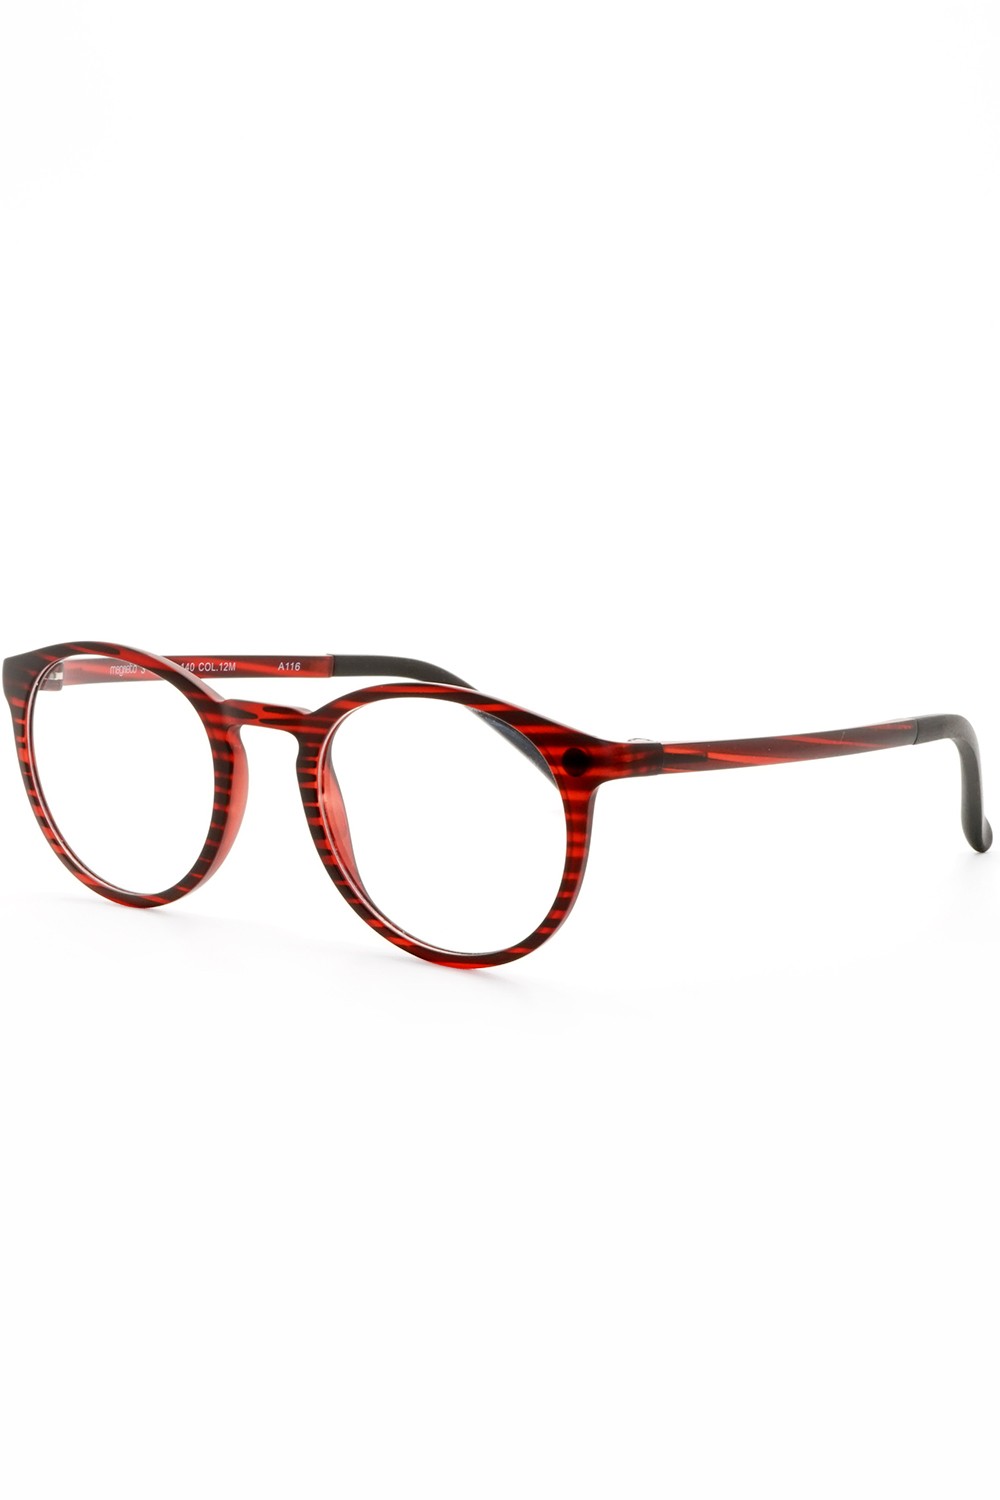 TF Occhiali - Occhiali da vista in plastica con clip solare tondi unisex rosso